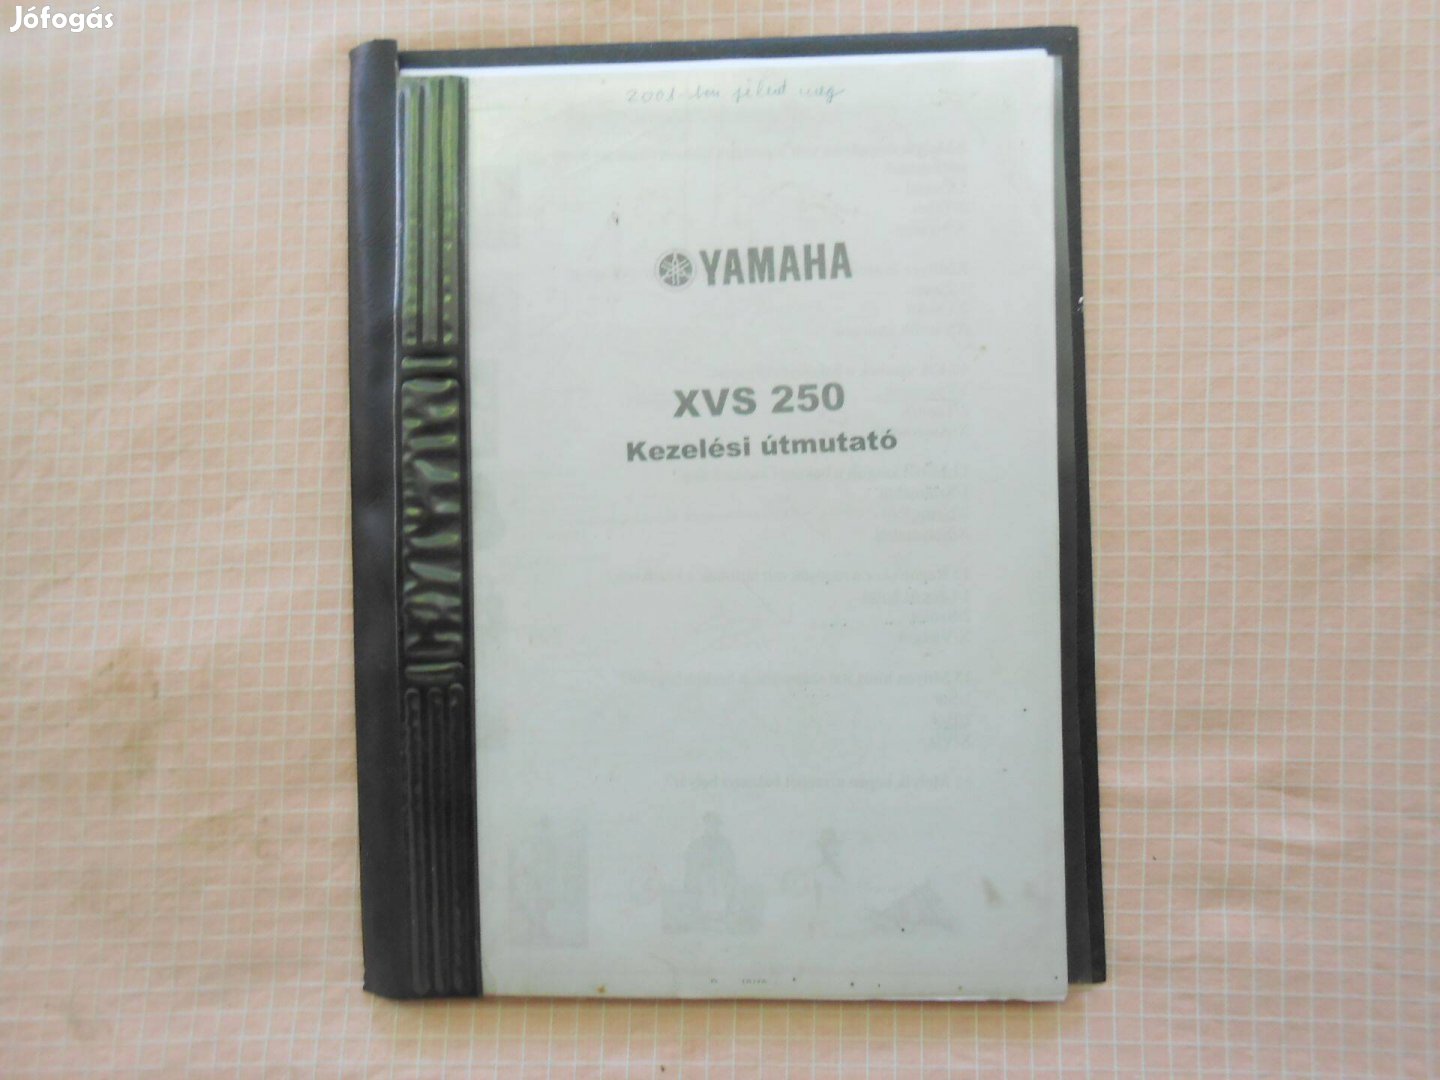 Yamaha Xvs 250 kezelési útmutató